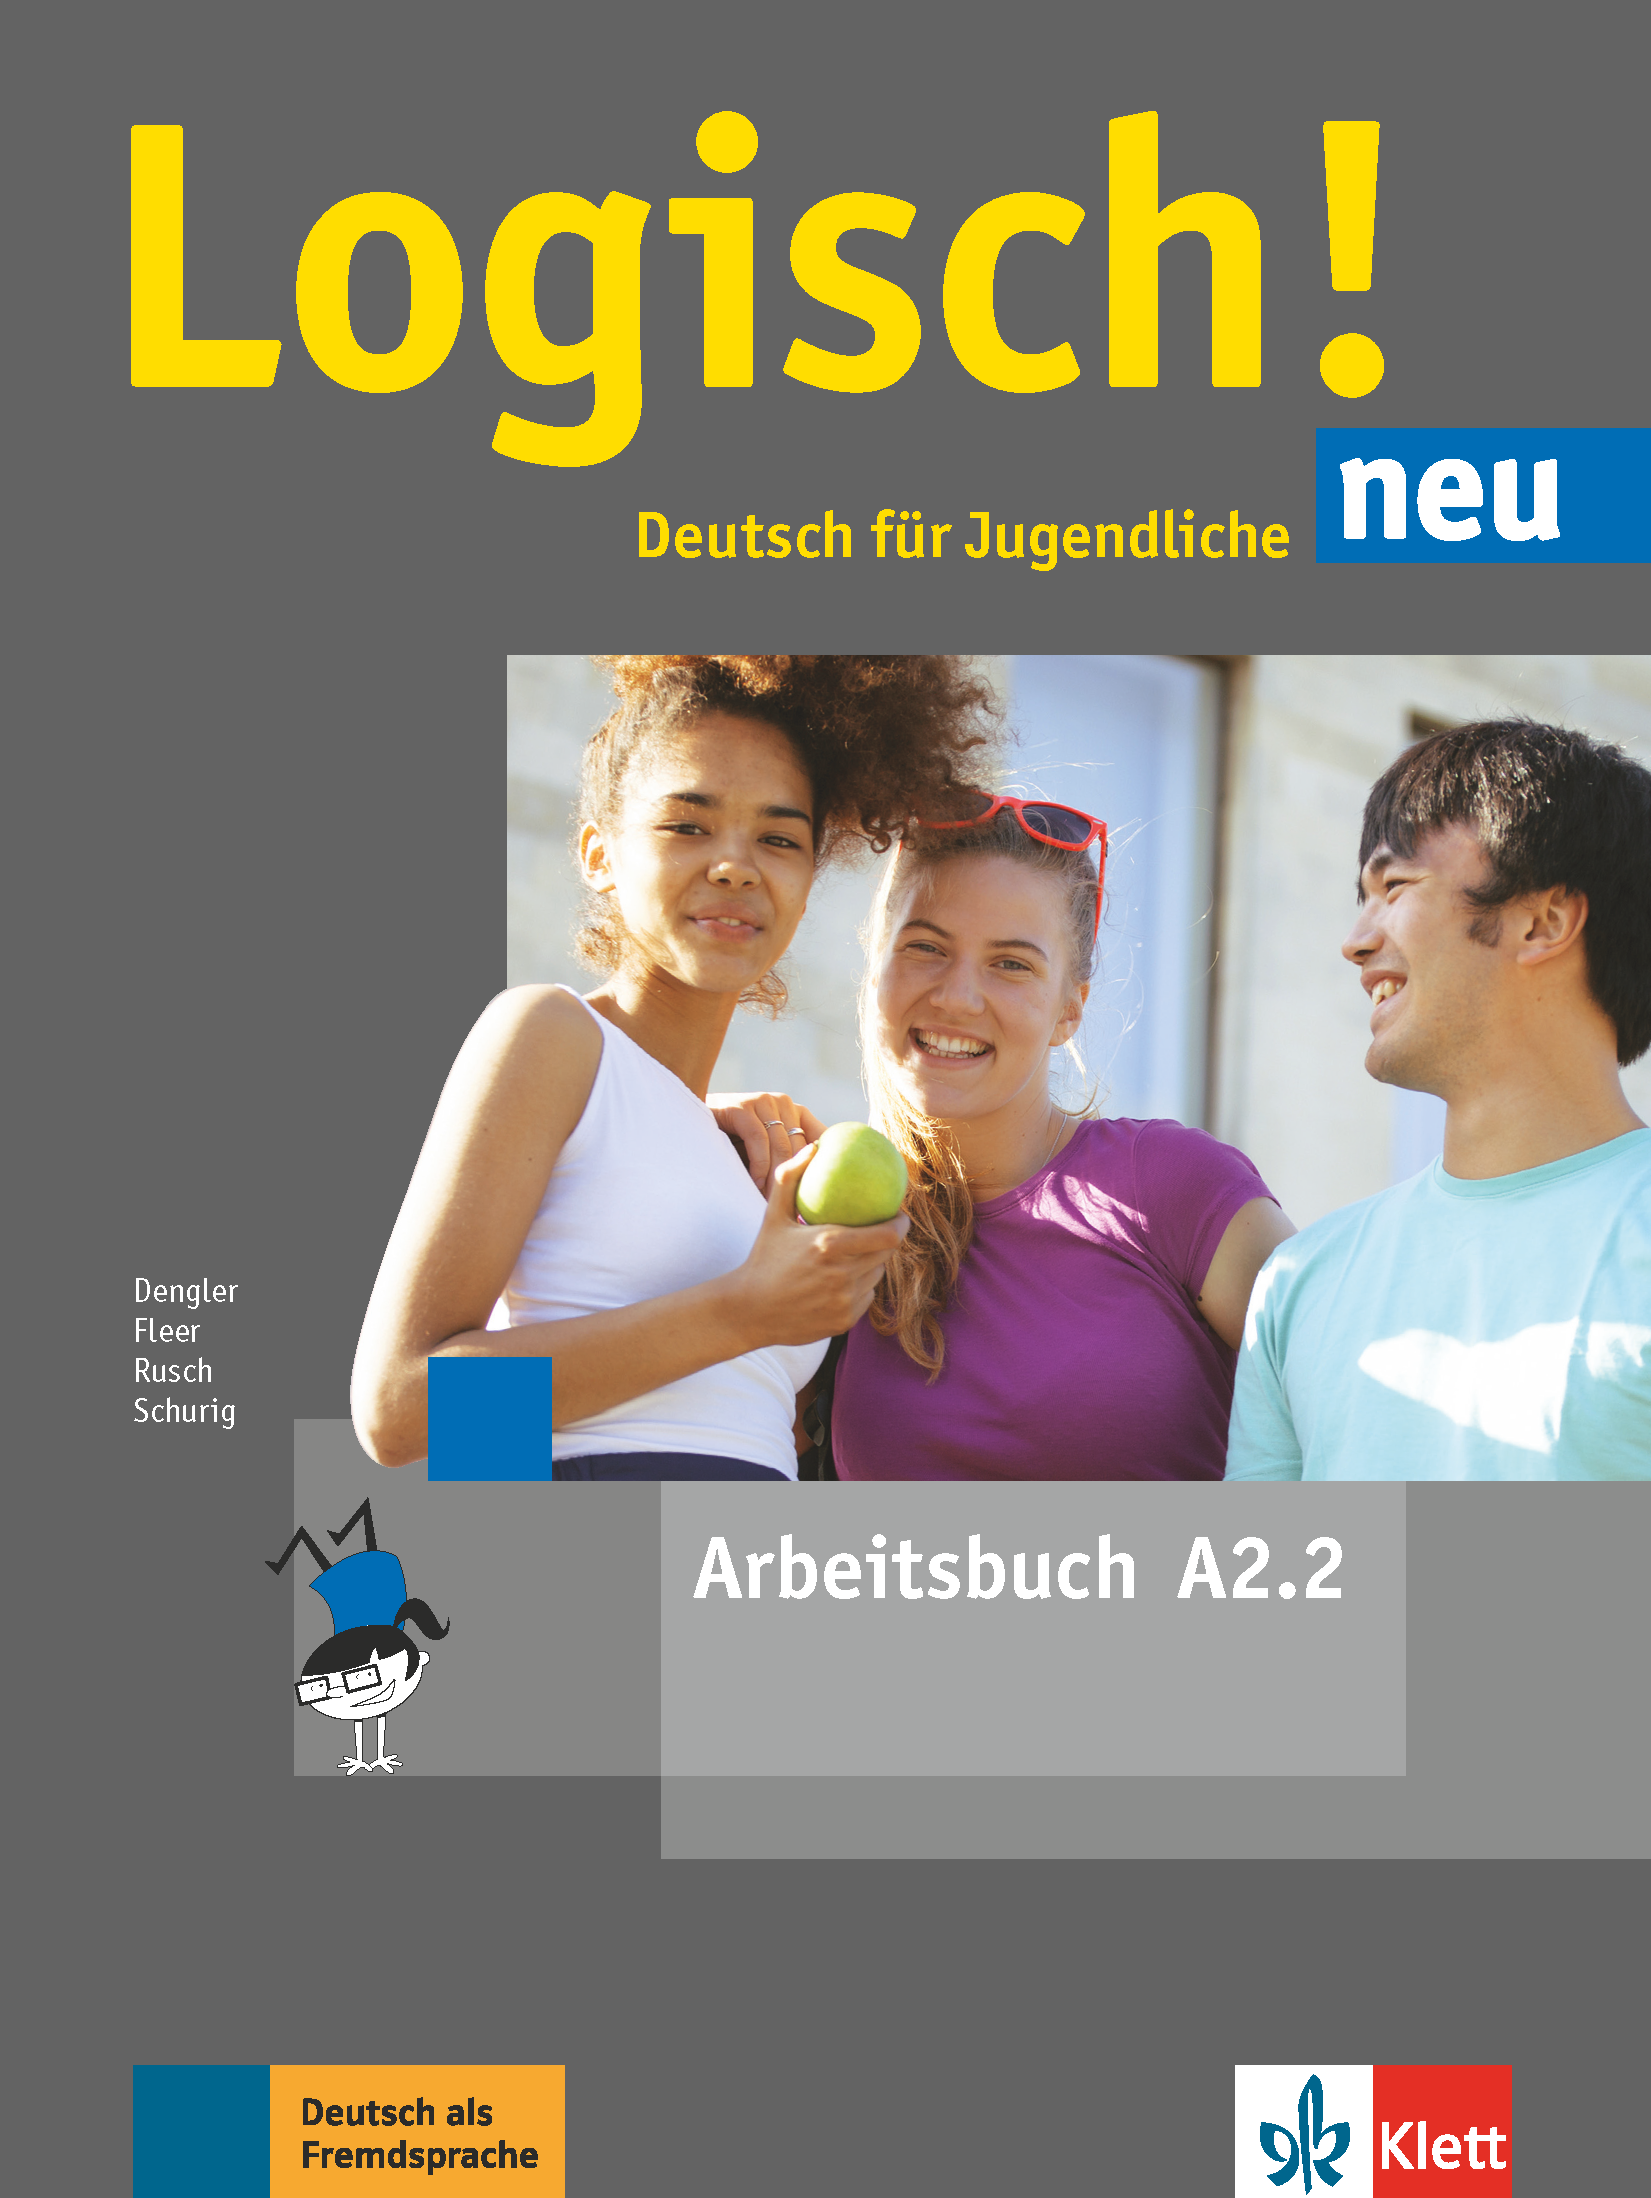 Logisch! Neu A2.2 interaktives Arbeitsbuch